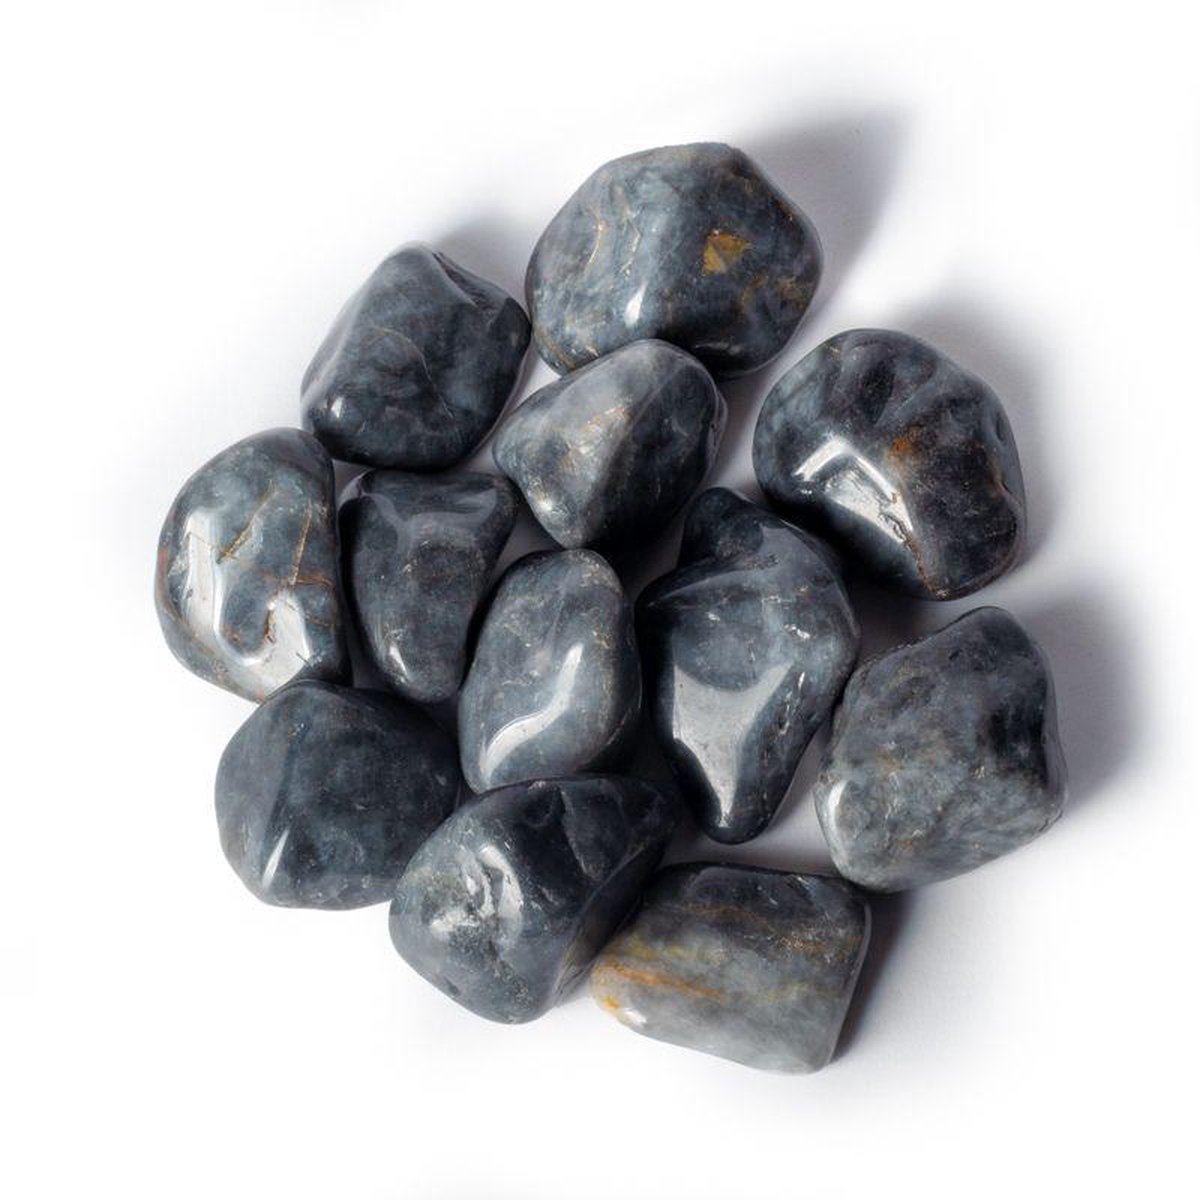 Bronziet trommelsteen, edelsteen ±3-4cm knuffelsteen in linnen zakje. Gratis verzending!